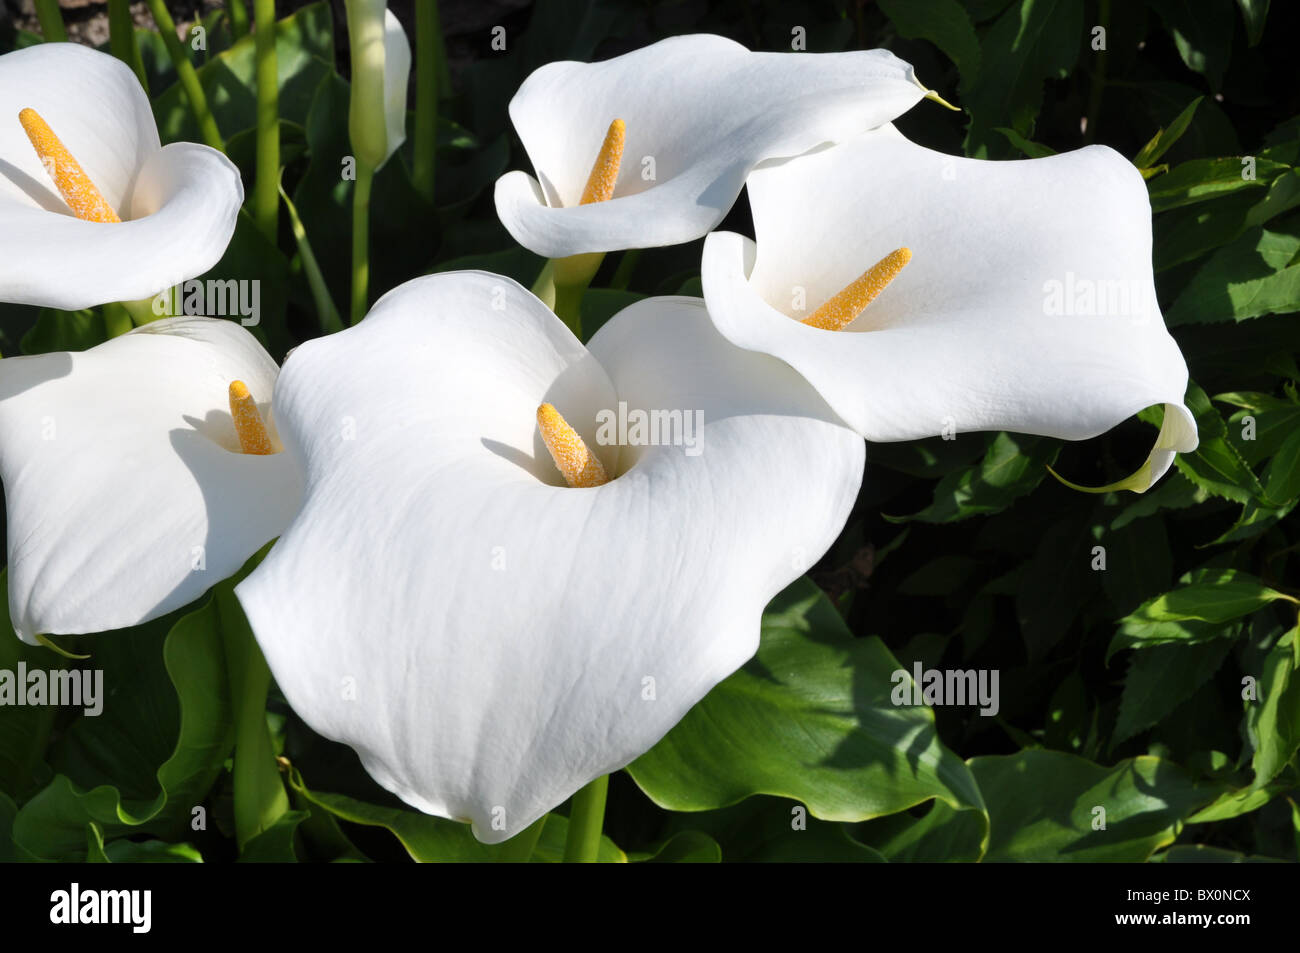 Groupe d'Arum lilly fleurs avec spadice jaune Banque D'Images